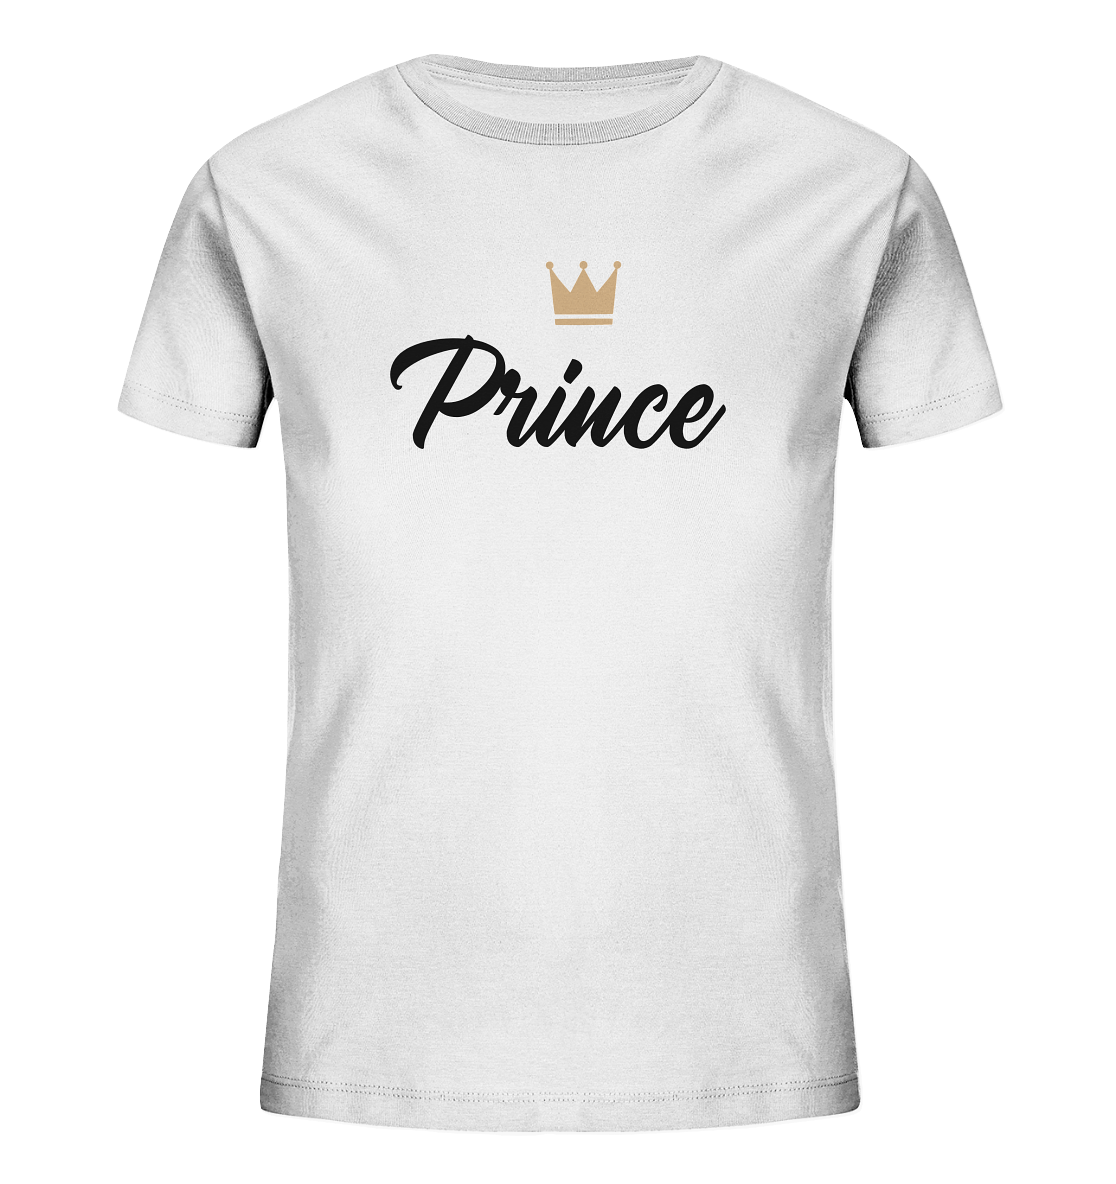 Prince T-Shirt Familienoutfit Set kaufen